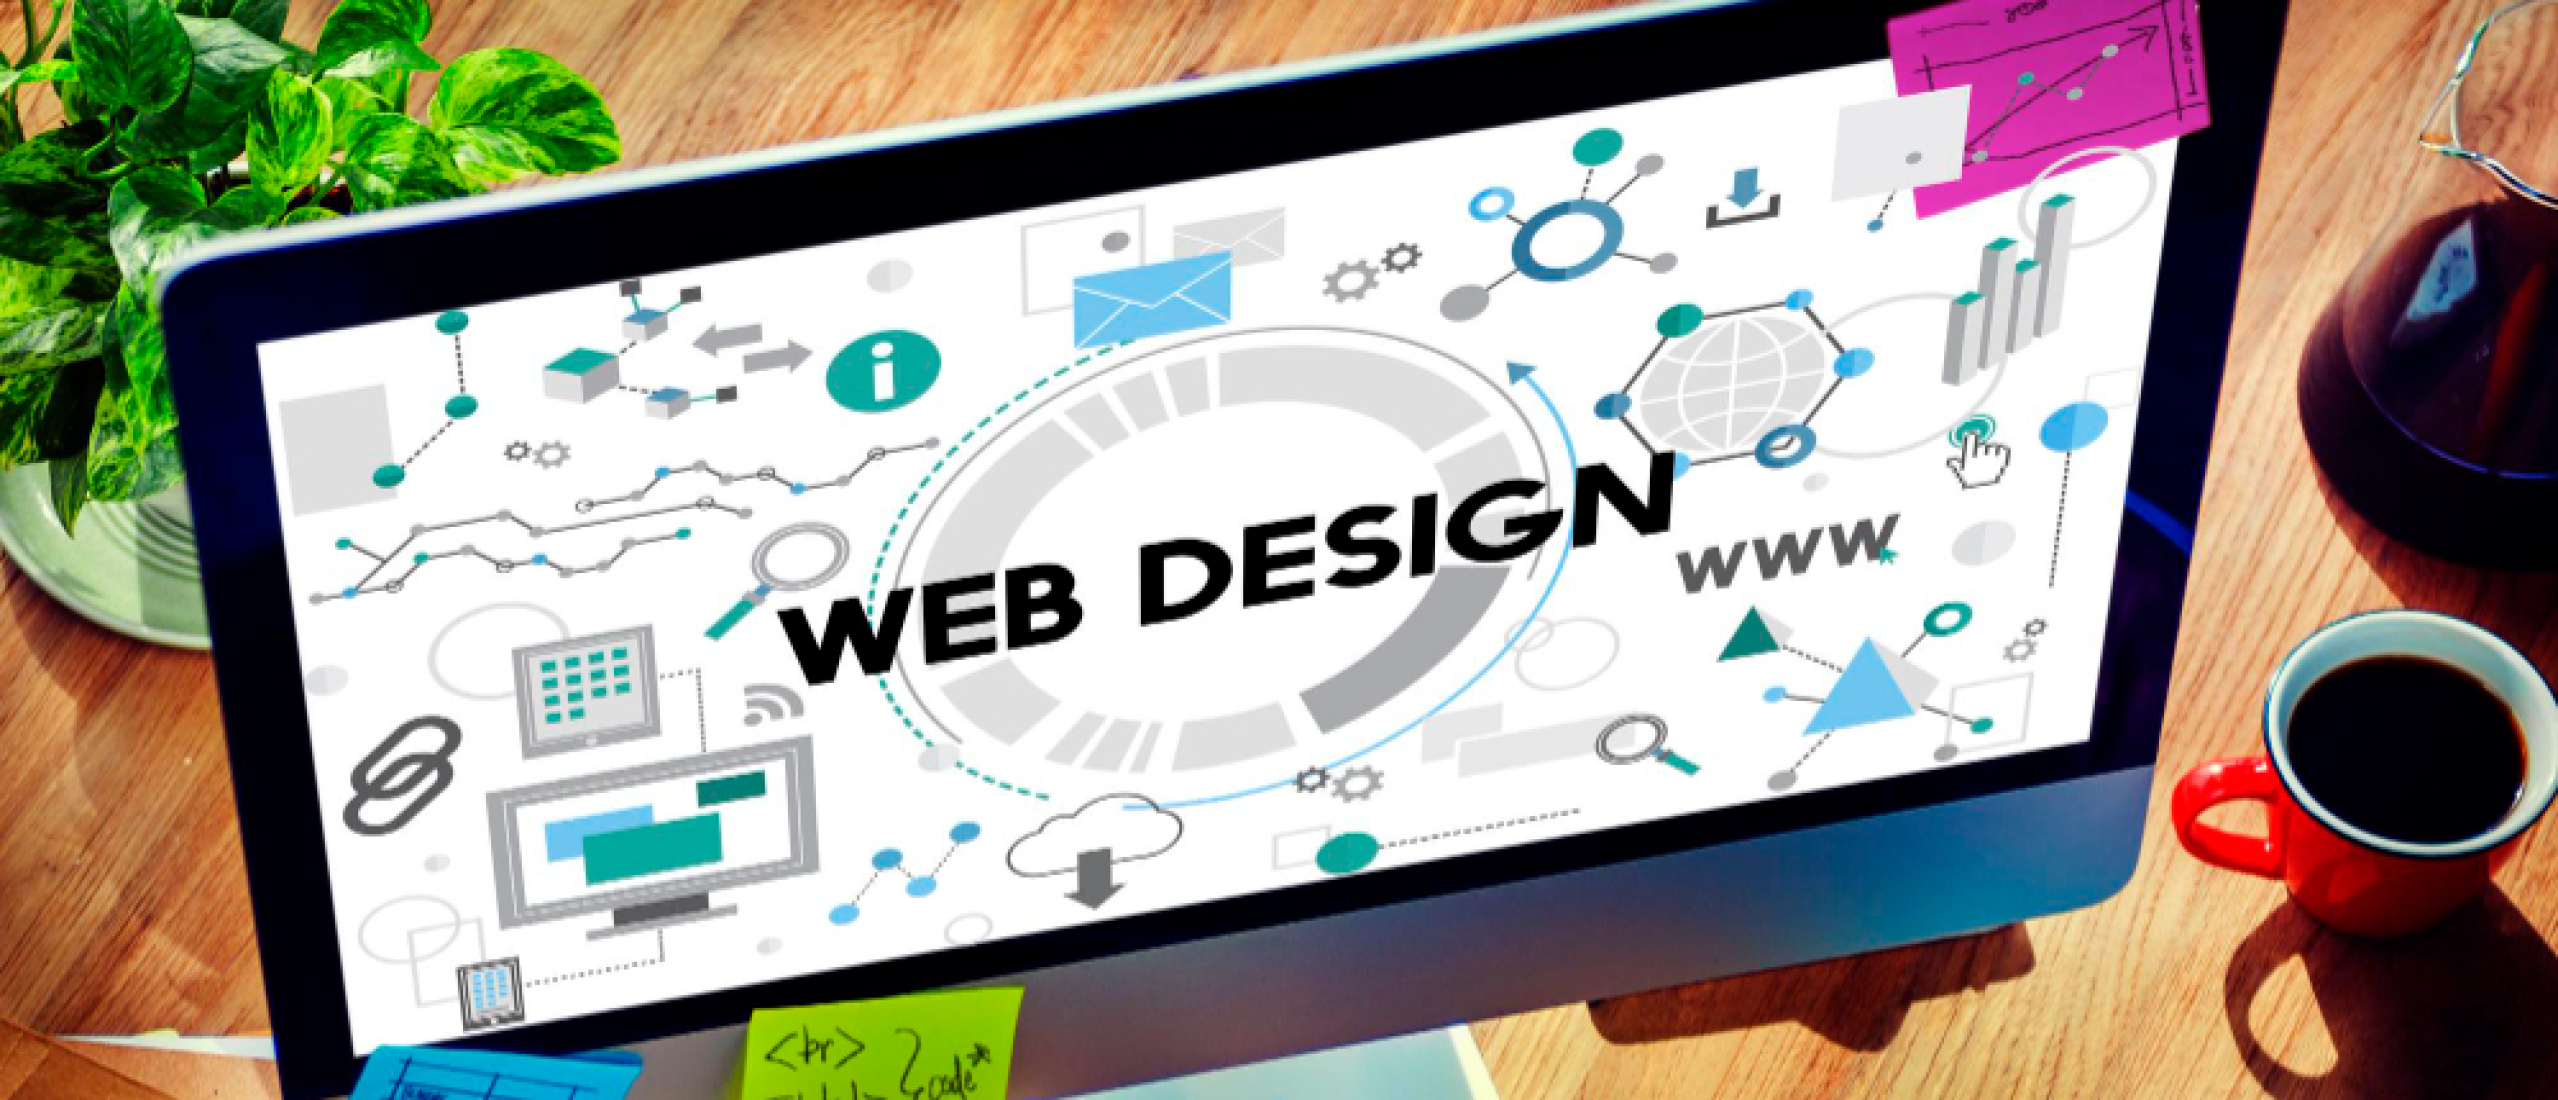 Het belang van webdesign in digitale marketingdiensten